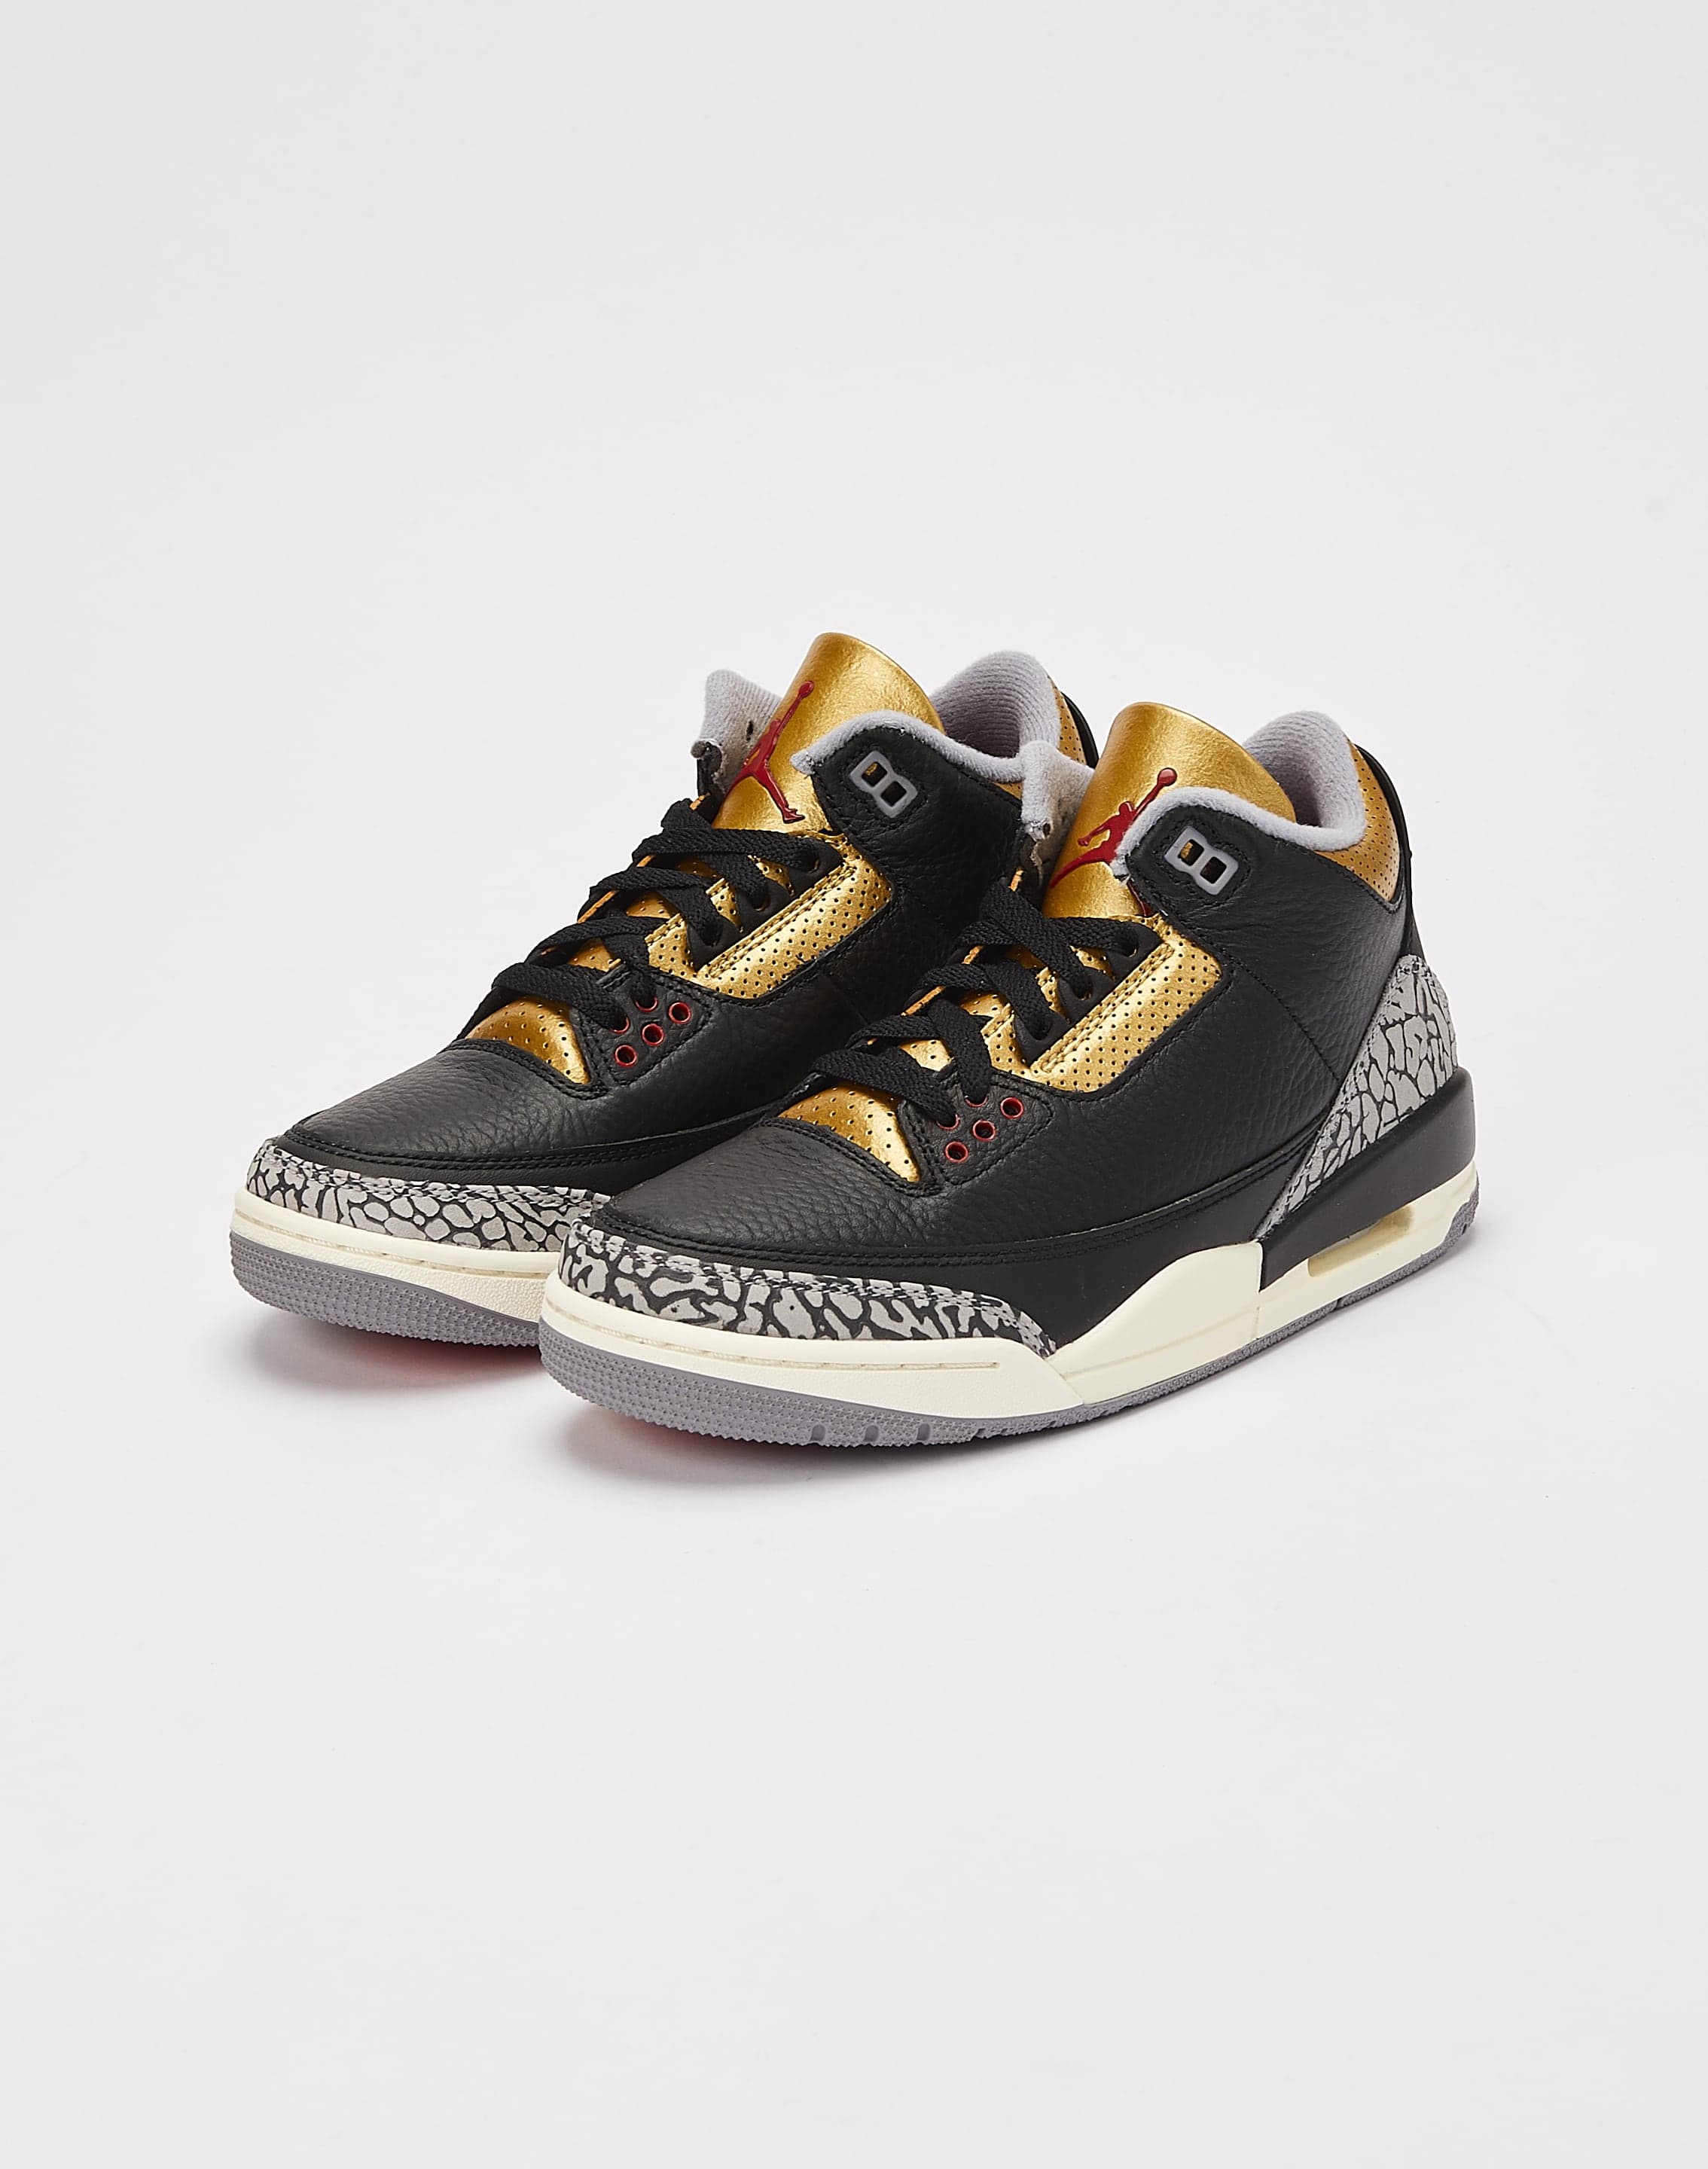 Jordan Air Jordan 3 Retro 'Black Cement Gold' DTLR